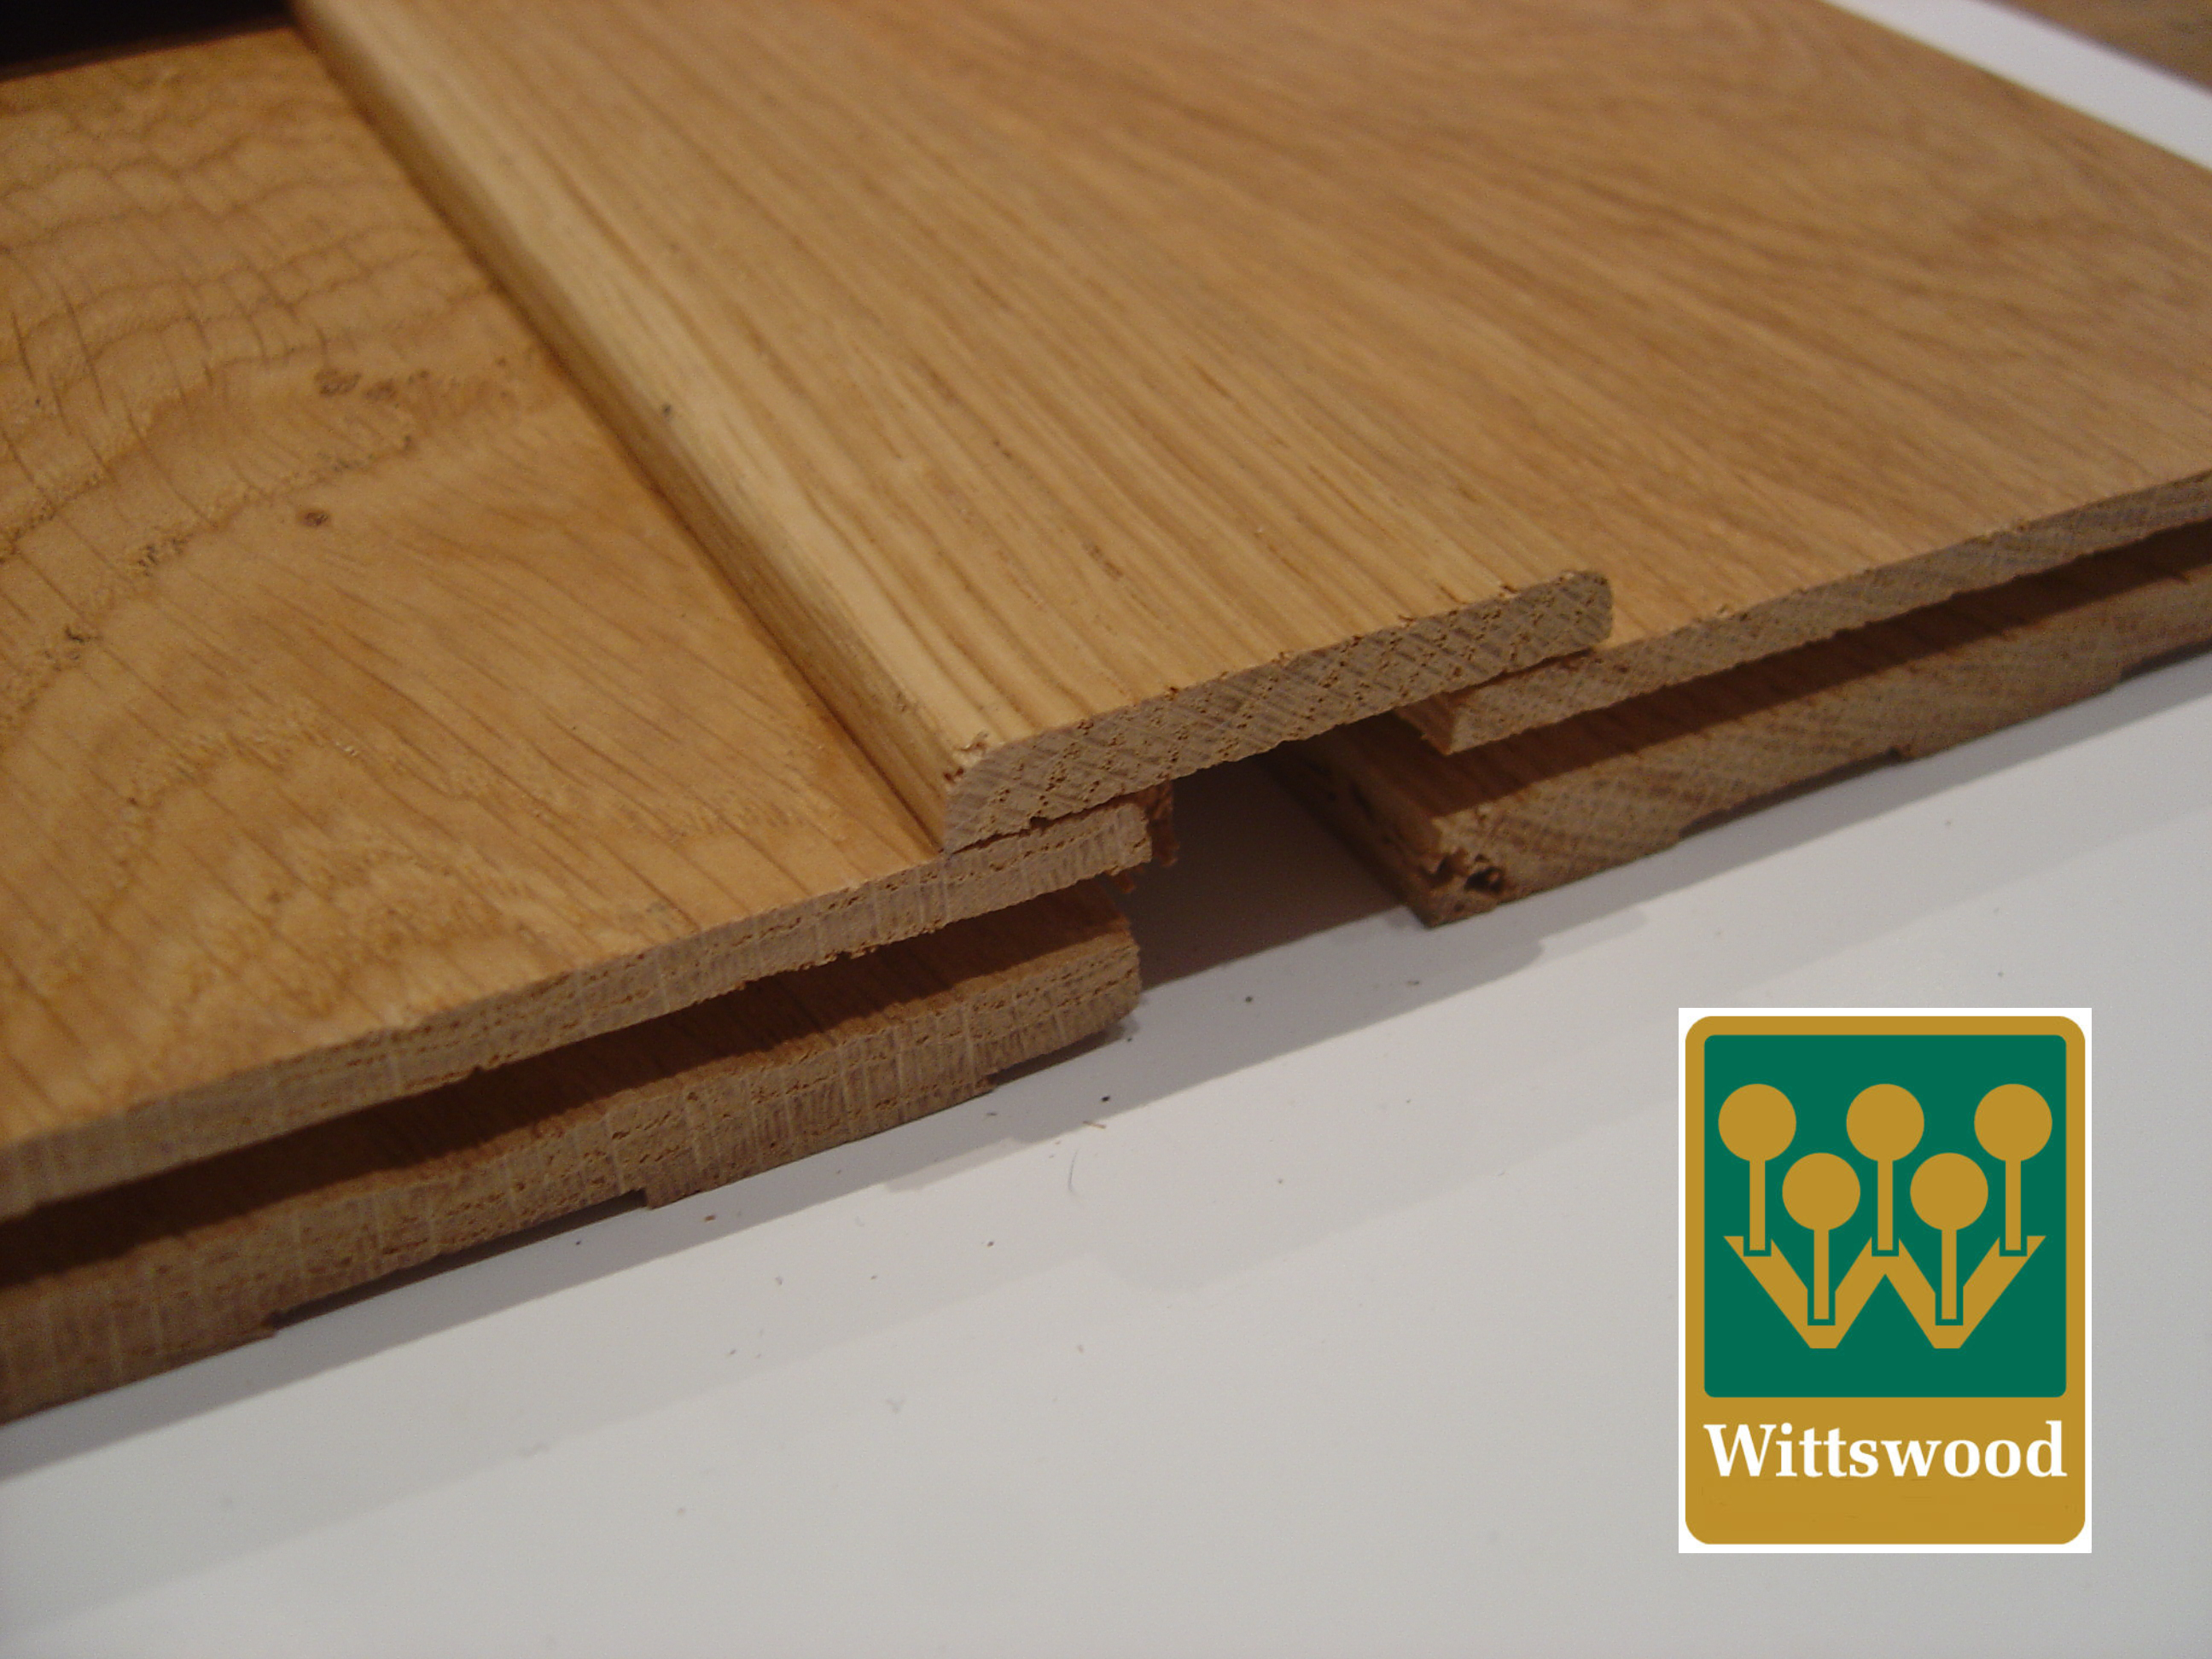 Accessorise Your Hardwood Flooring!